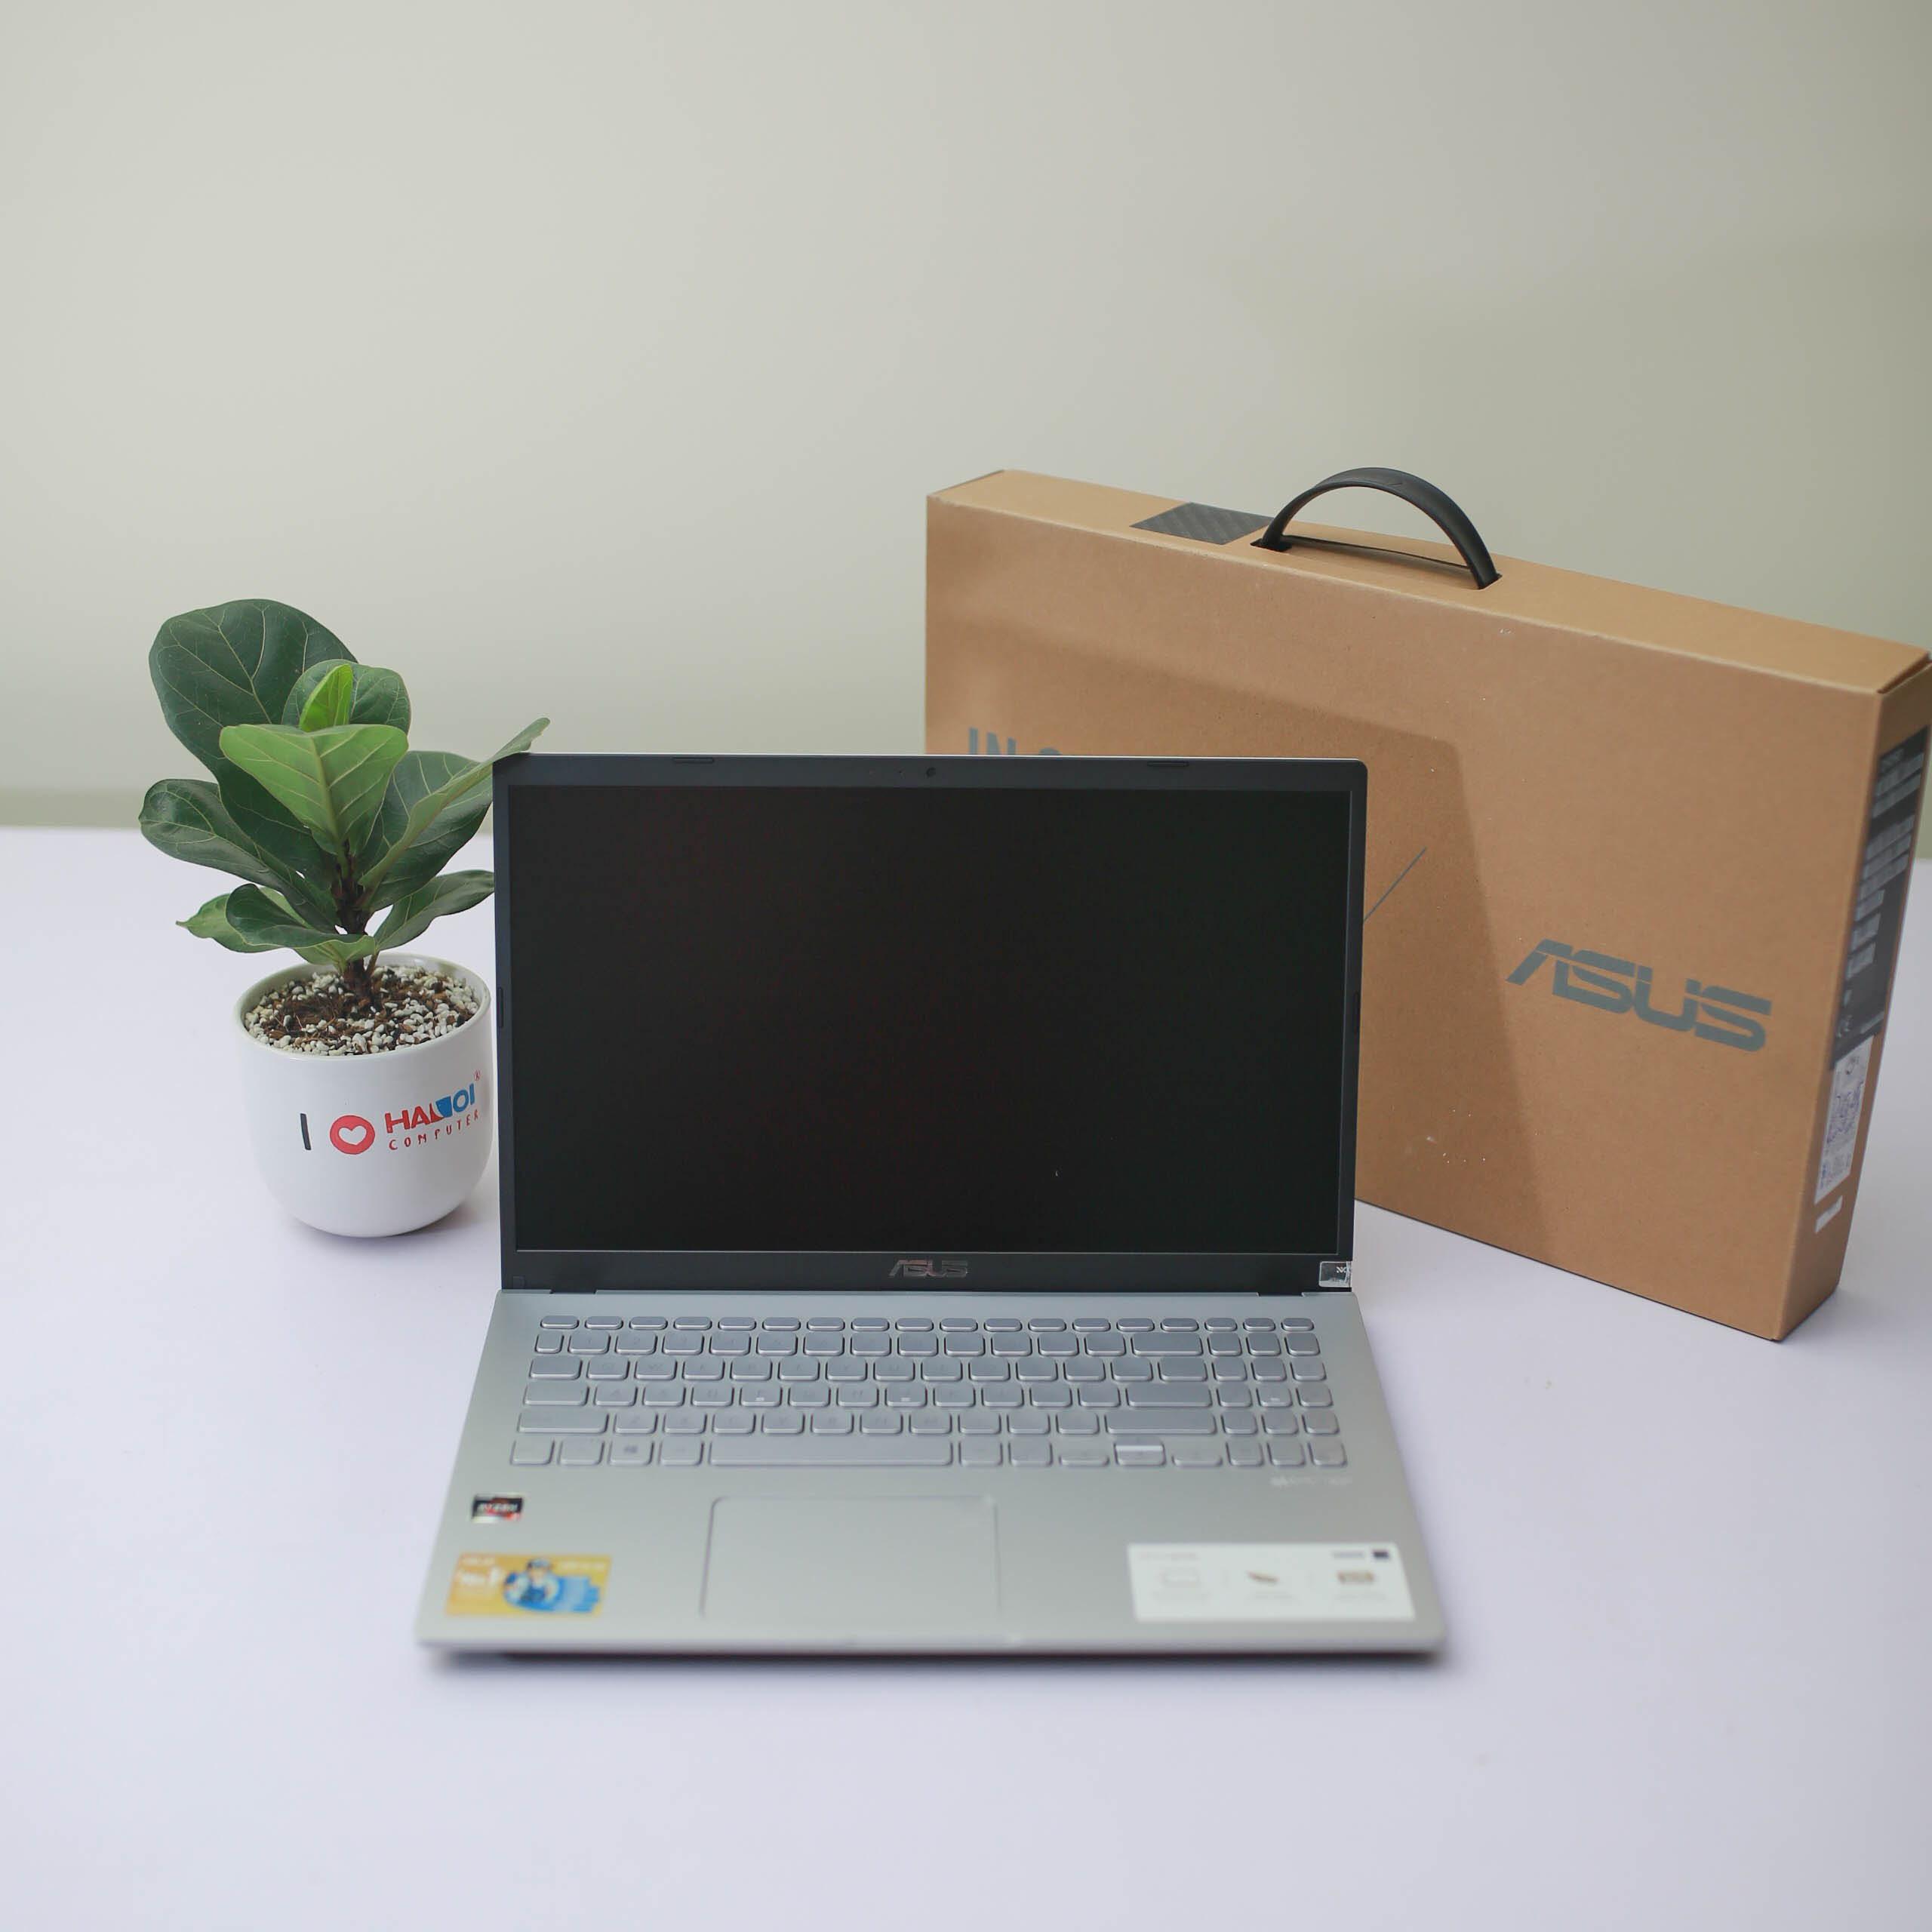 8. Asus D515DA goedkope laptop voor studenten 